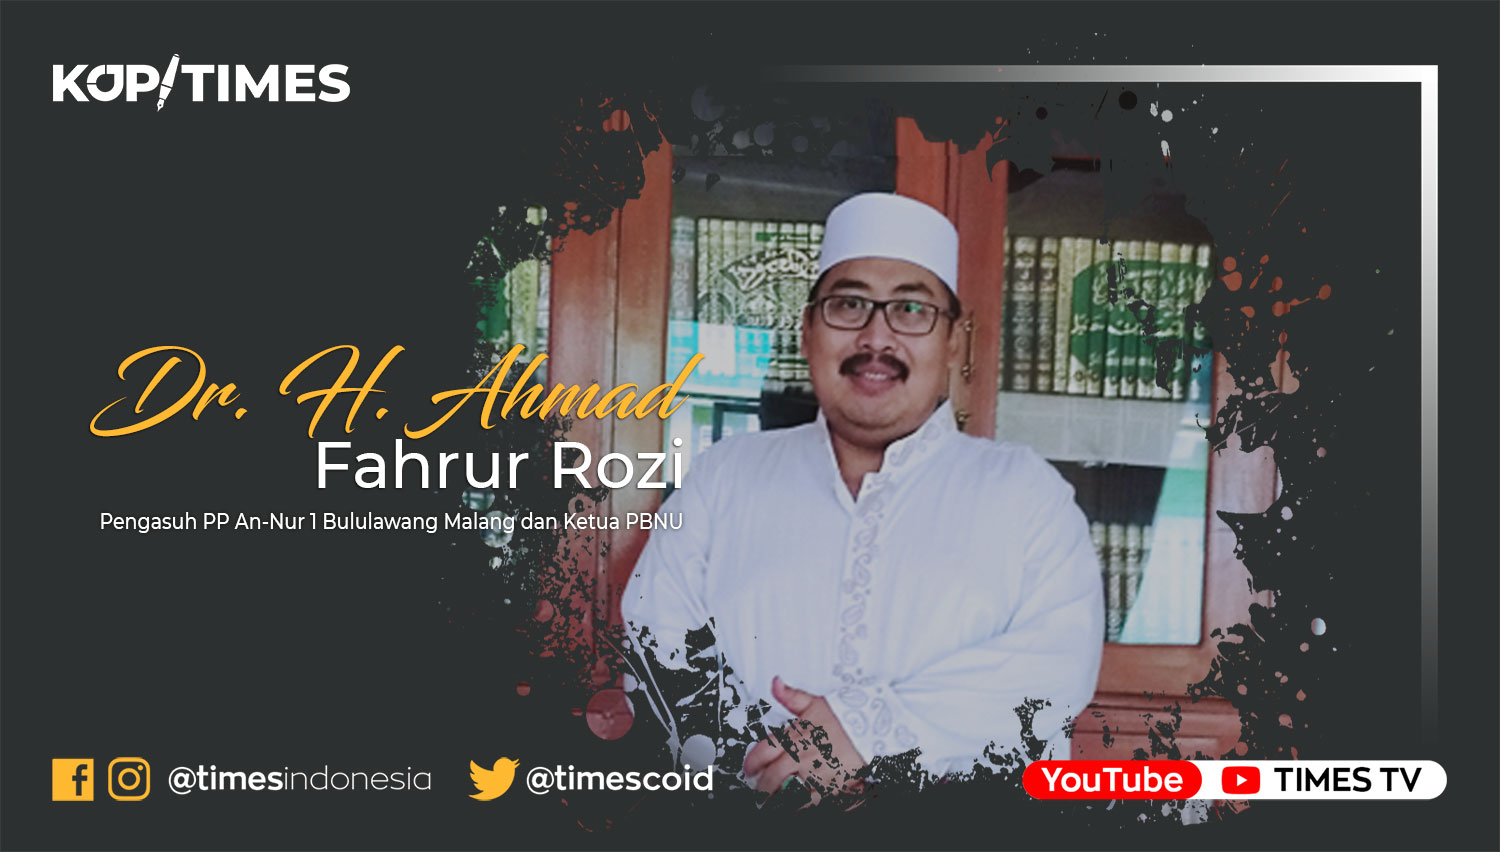 Dr. H. Ahmad Fahrur Rozi, Pengasuh PP An-Nur 1 Bululawang Malang dan Ketua PBNU.